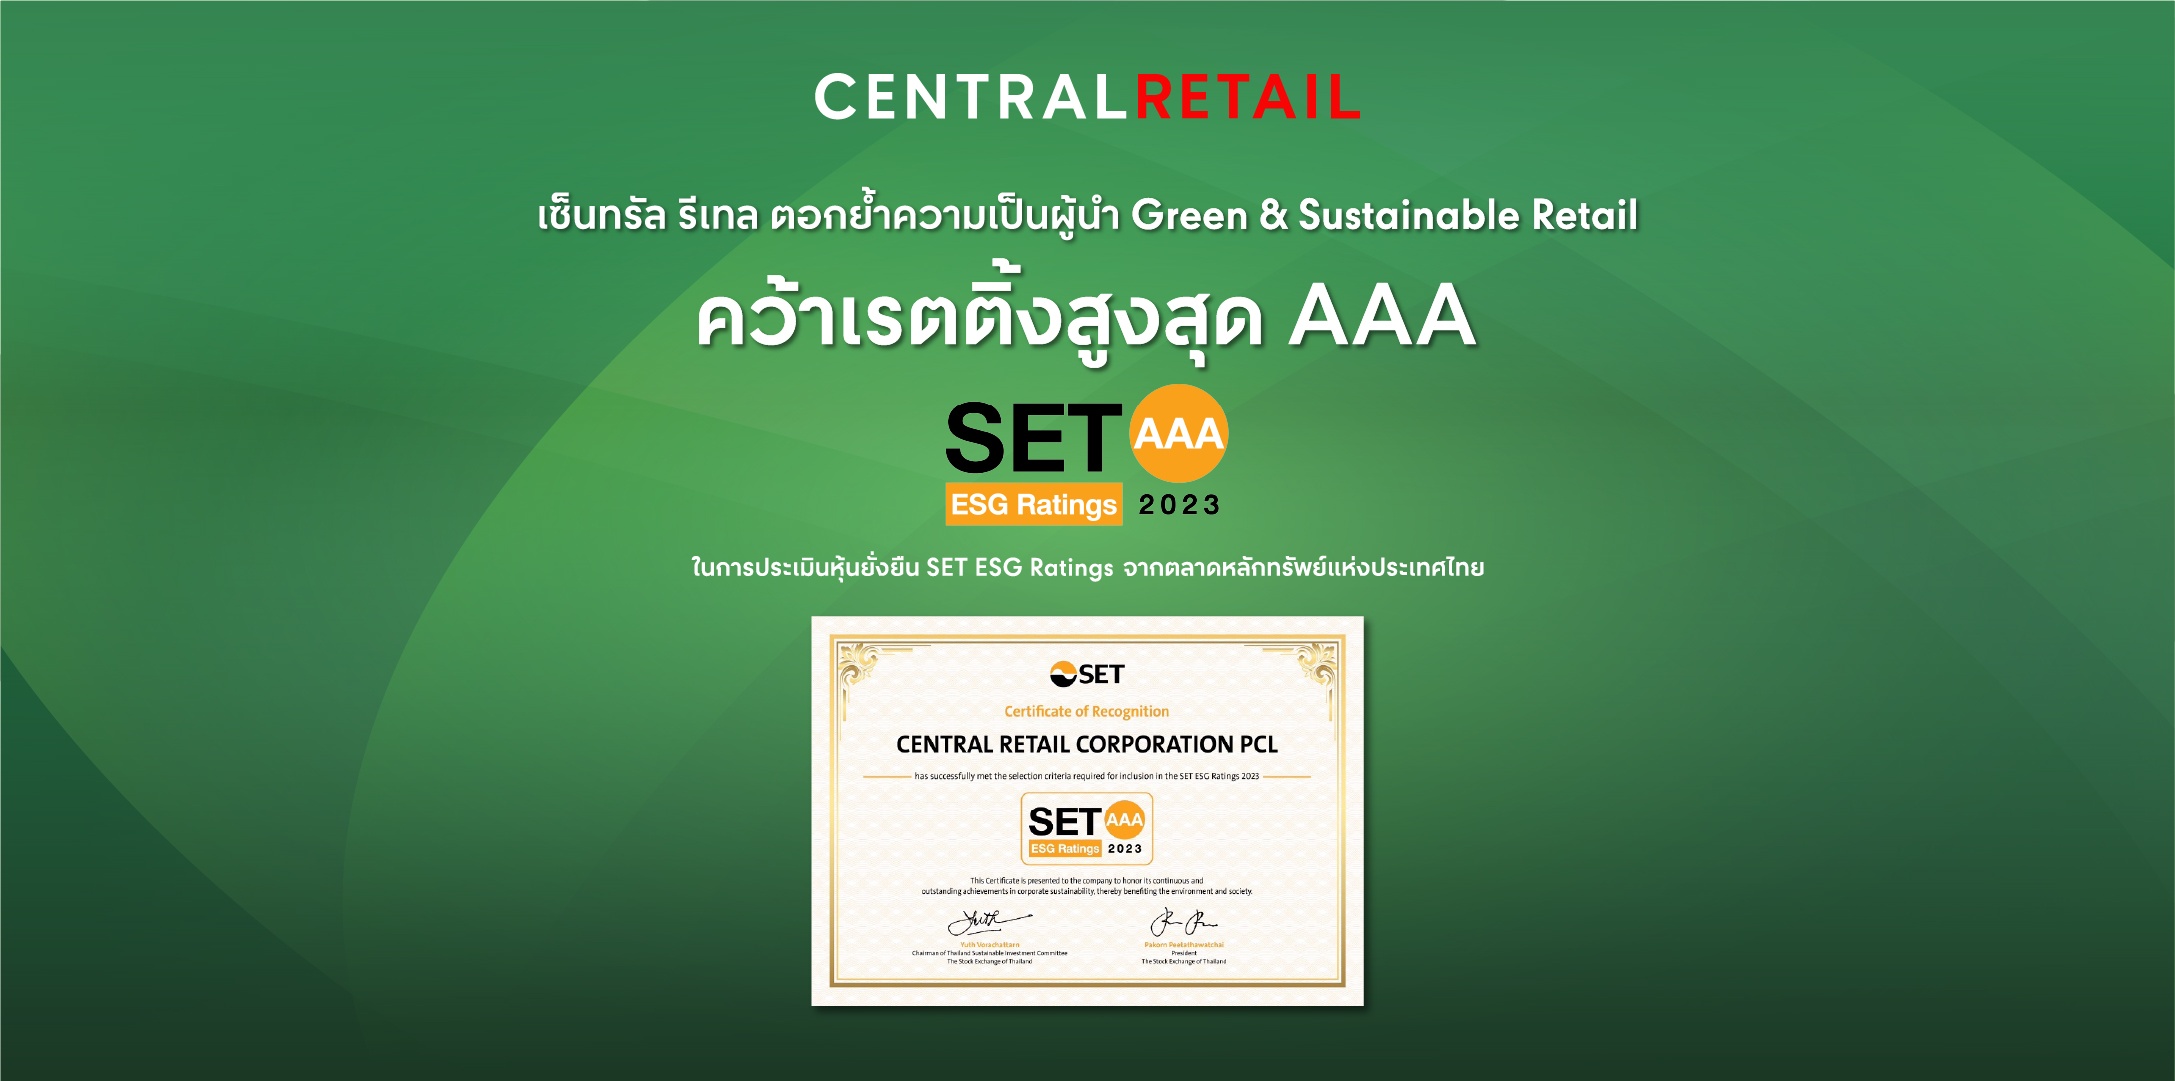 เซ็นทรัล รีเทล คว้าเรตติ้งสูงสุด AAA ตอกย้ำความเป็นผู้นำ Green & Sustainable Retail จากการประเมินผลหุ้นยั่งยืน SET ESG Rating ปี 2566